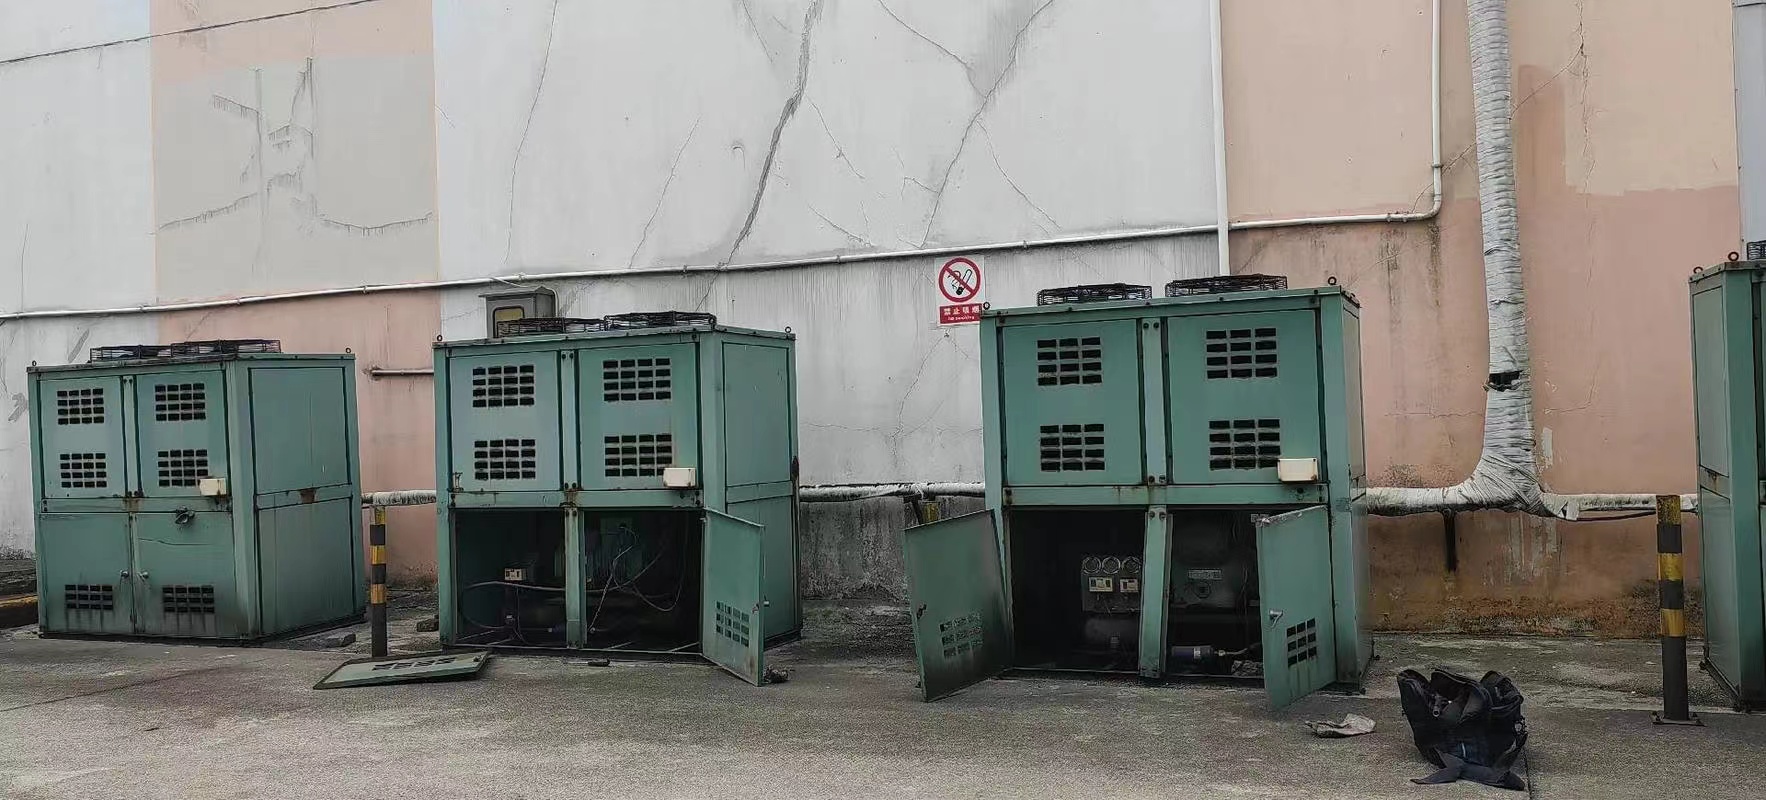 三明宁化氨螺杆制冷机拆除回收制造厂设备拆除